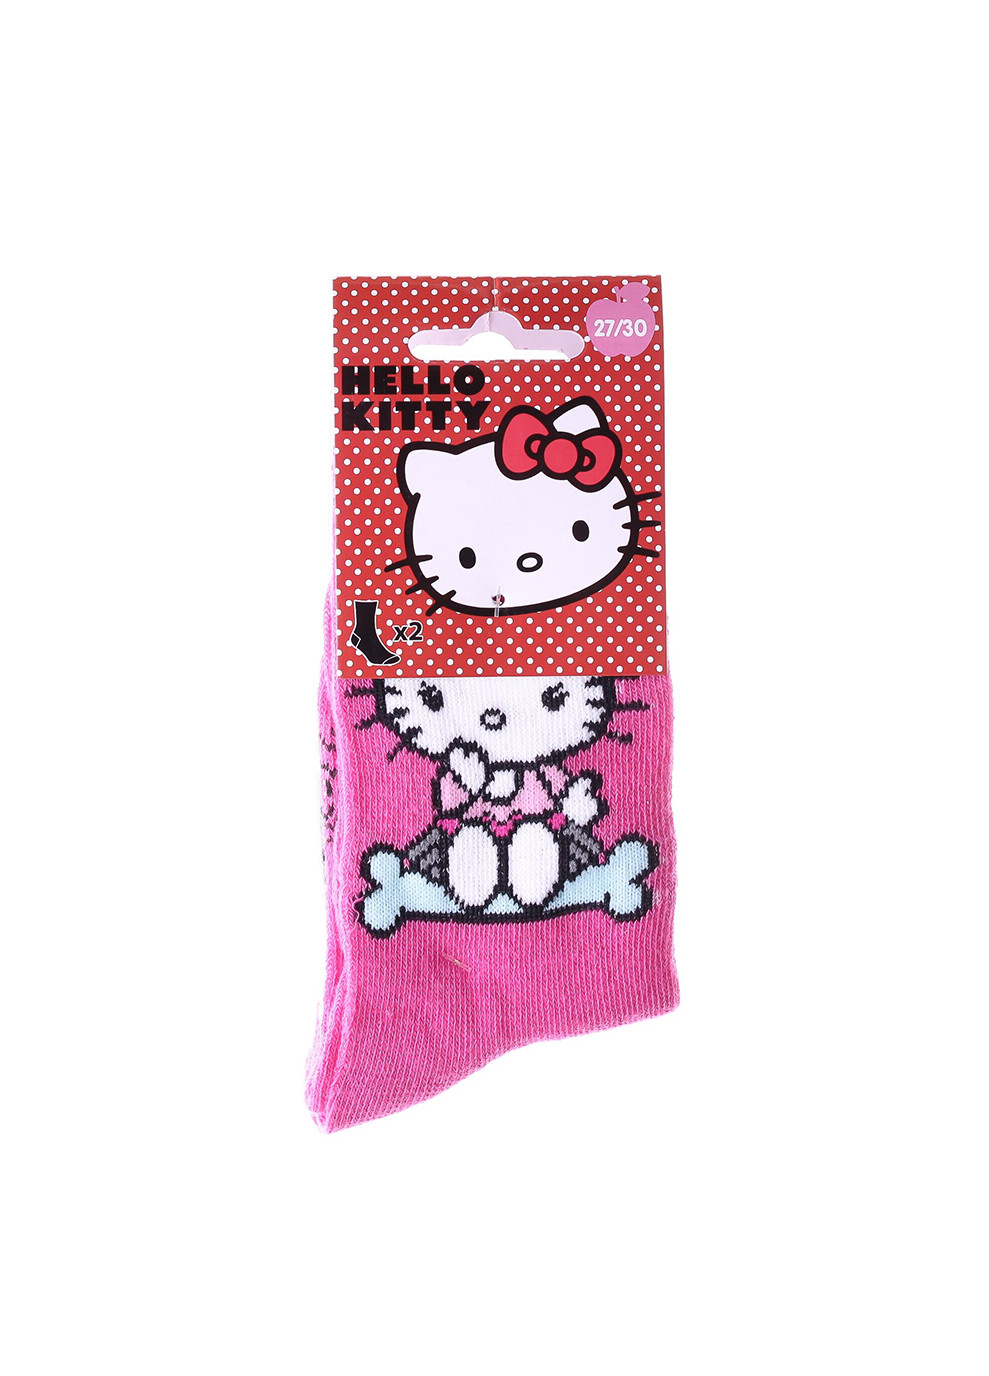 Носки Socks 2-pack magenta/gray Hello Kitty (260796107)